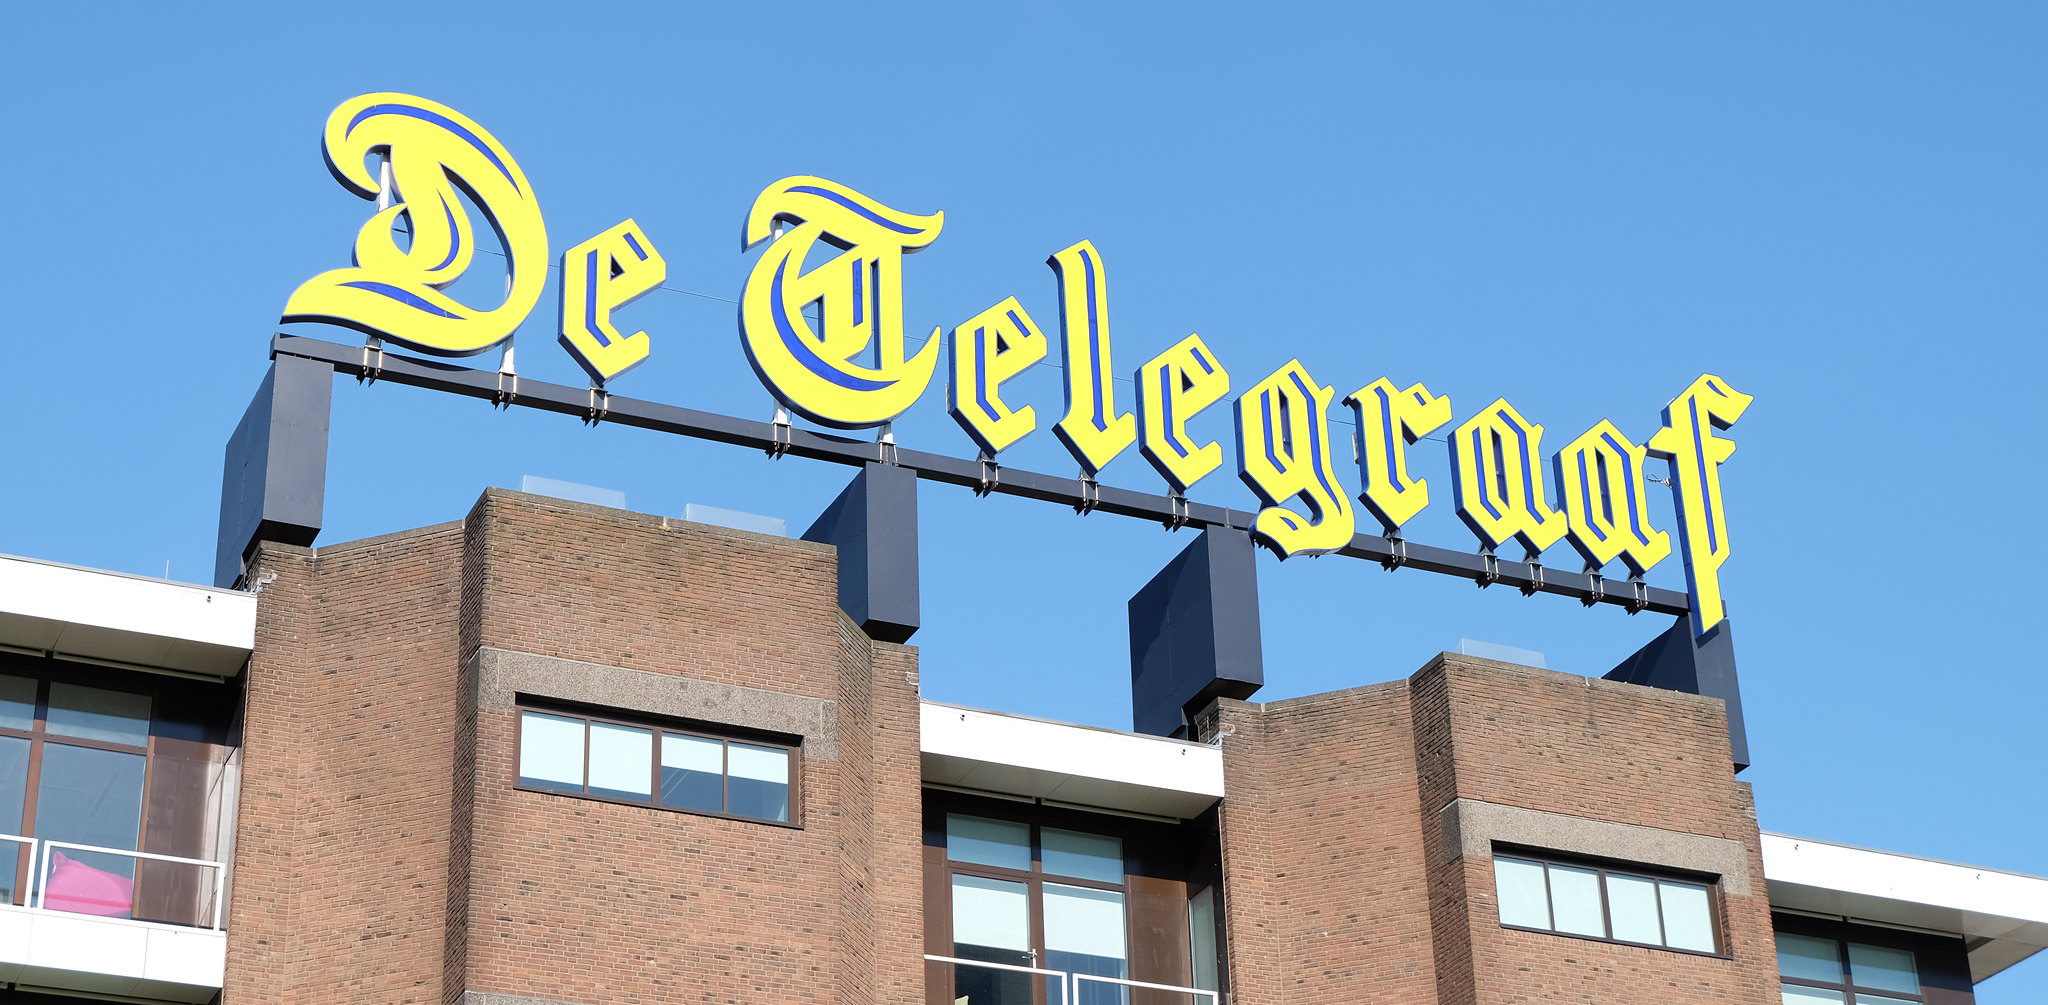 De Telegraaf Üretkenliği ve Verimliliği EditShare ile Yükseltti